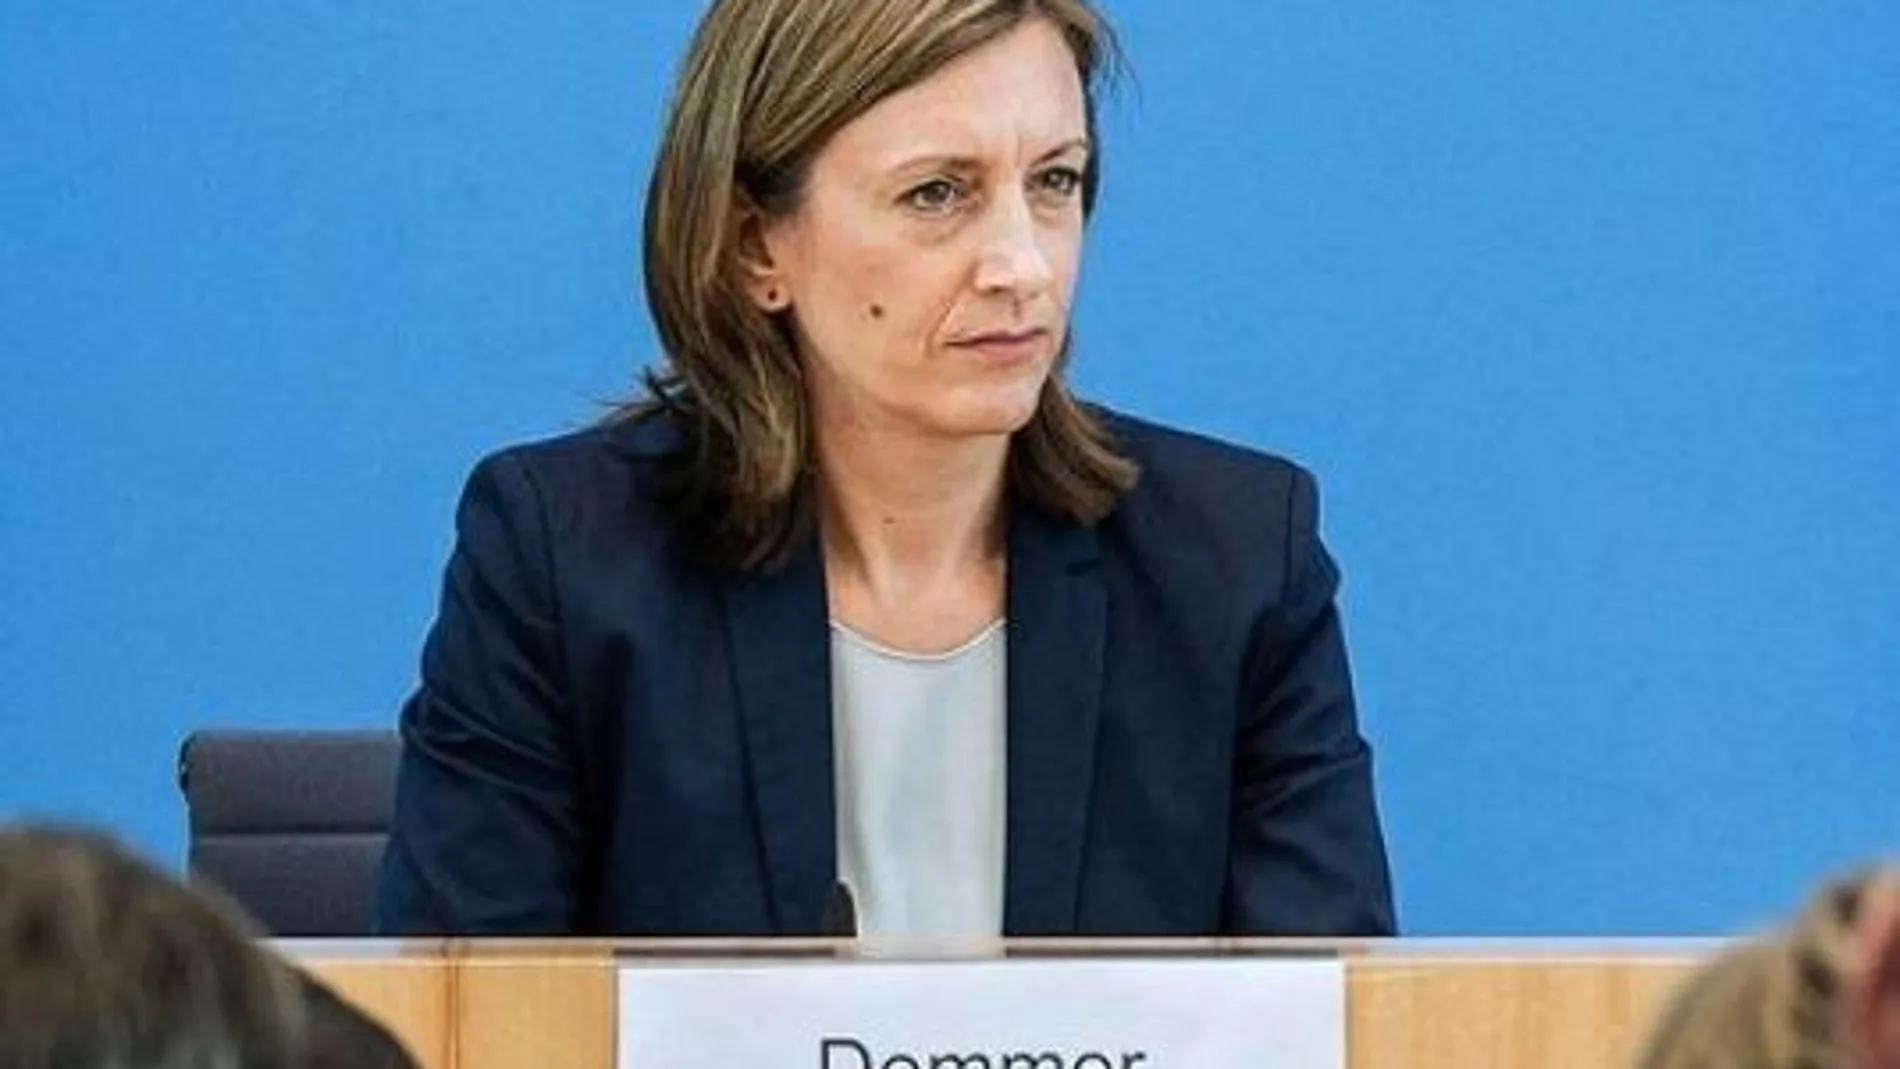 La viceportavoz del Gobierno alemán, Ulrike Demmer